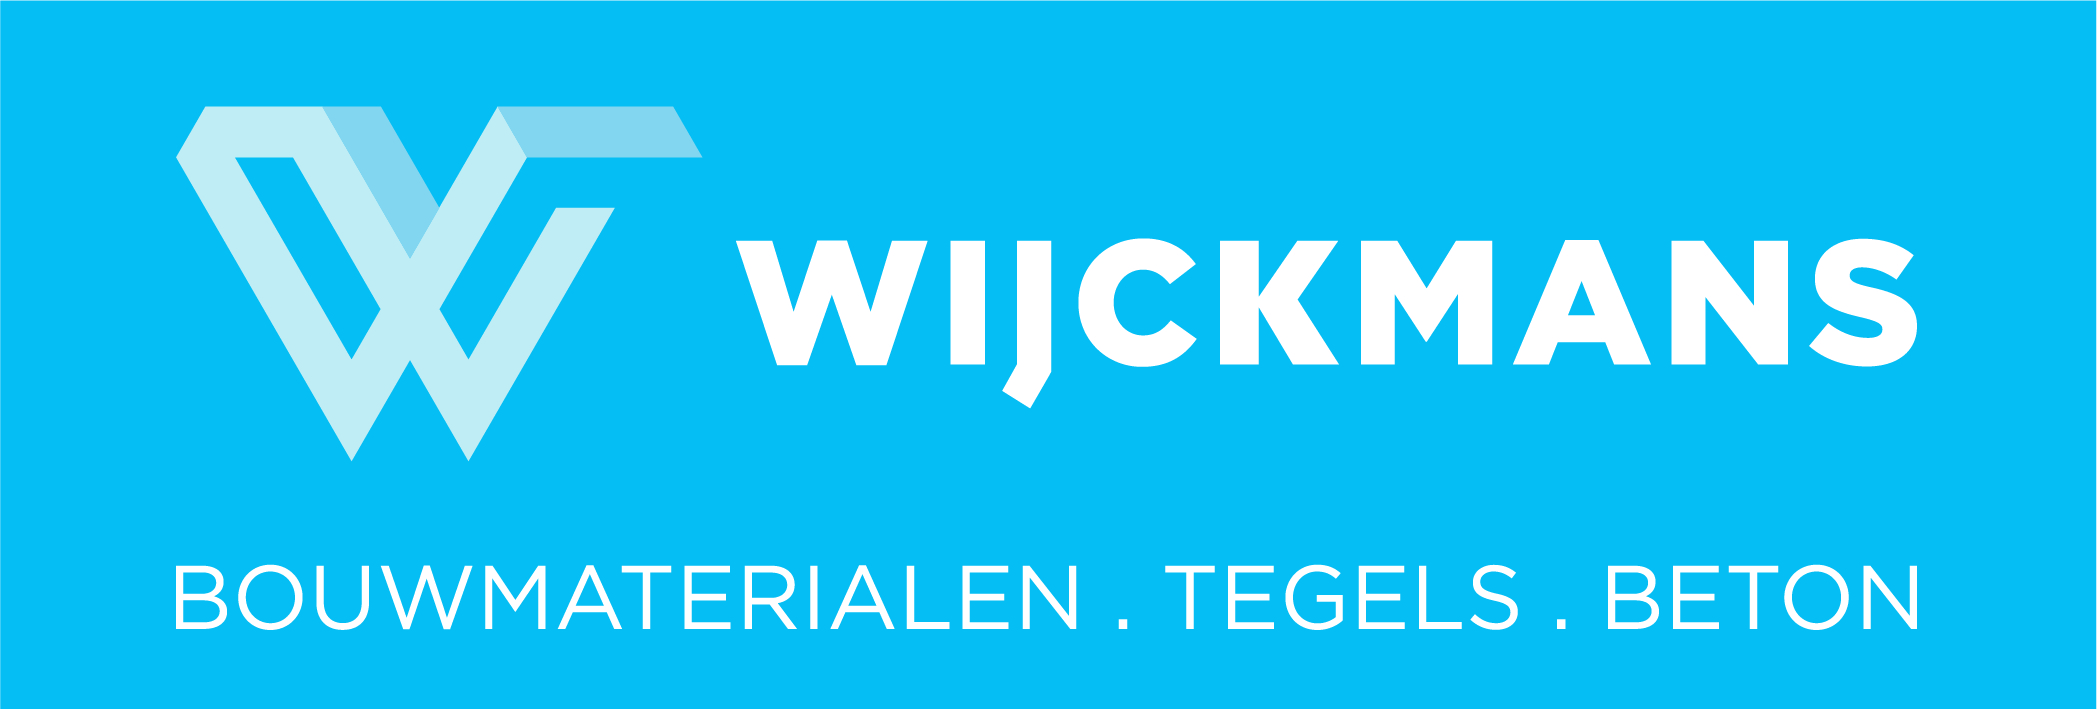 Wijckmans logo